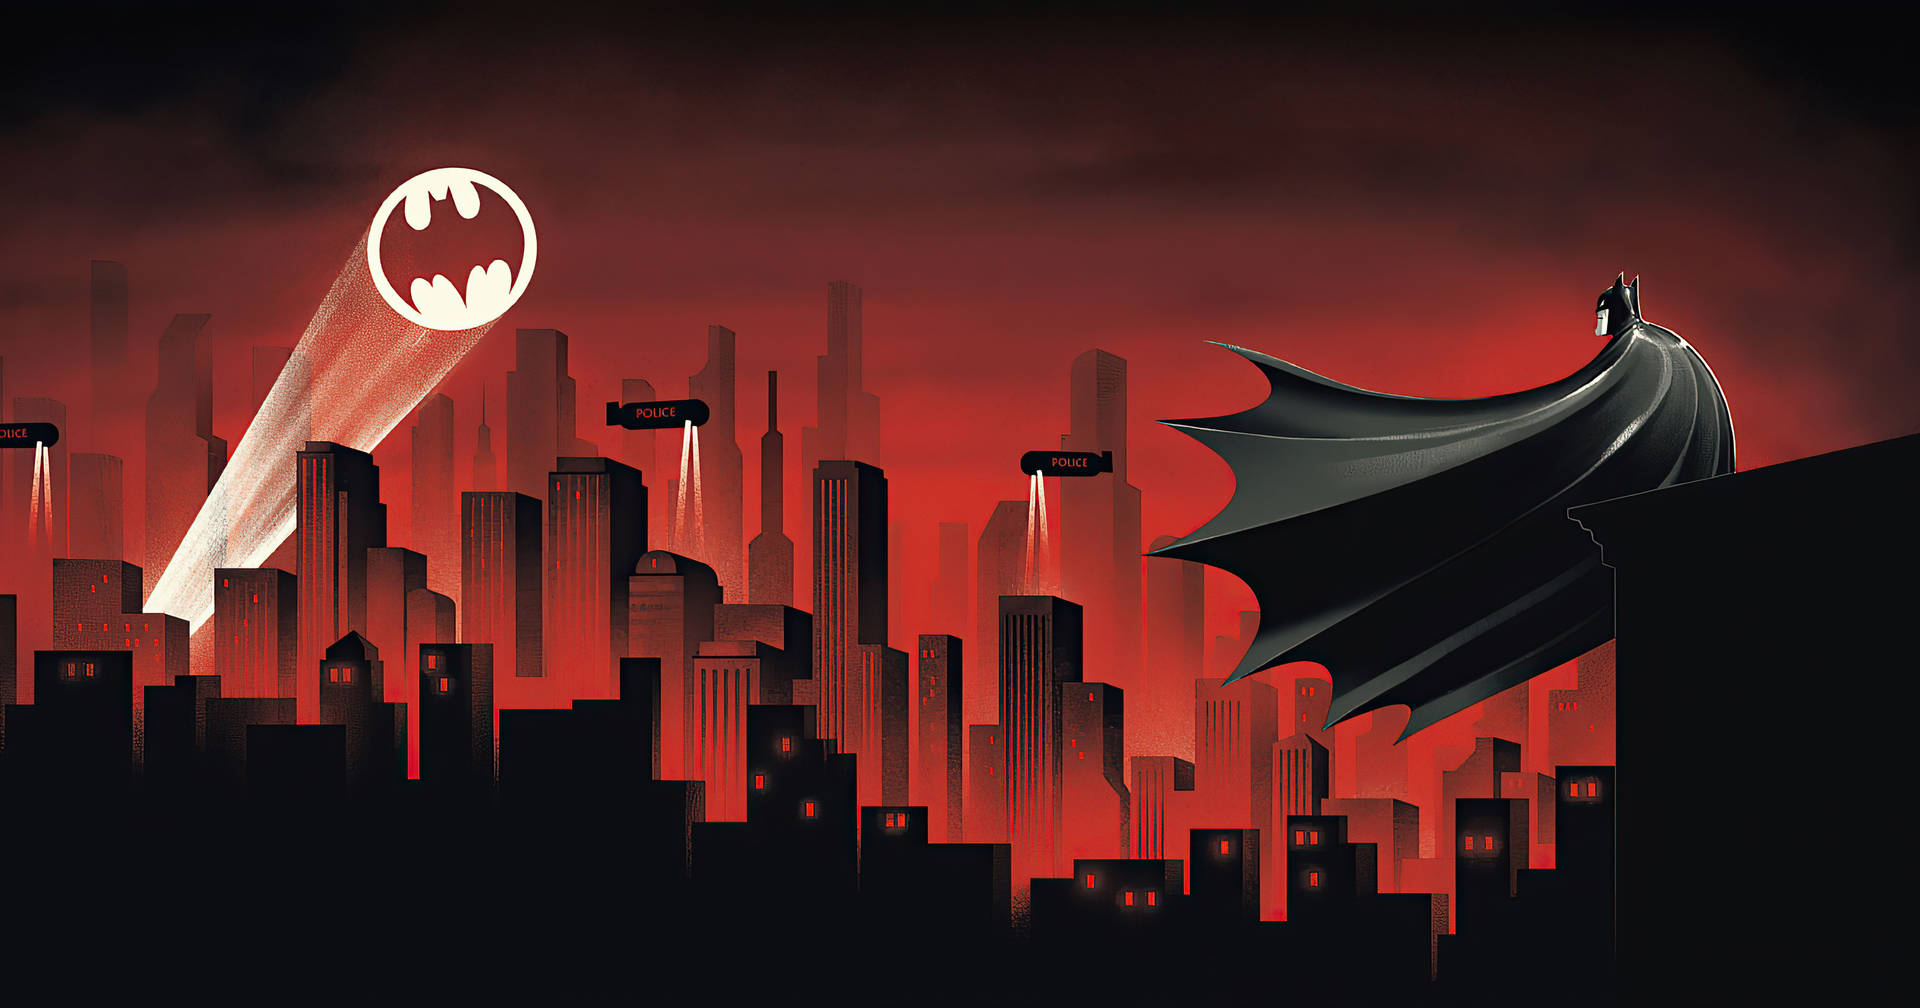 Batman Animated Red City Spotlight Desktop Wallpaper